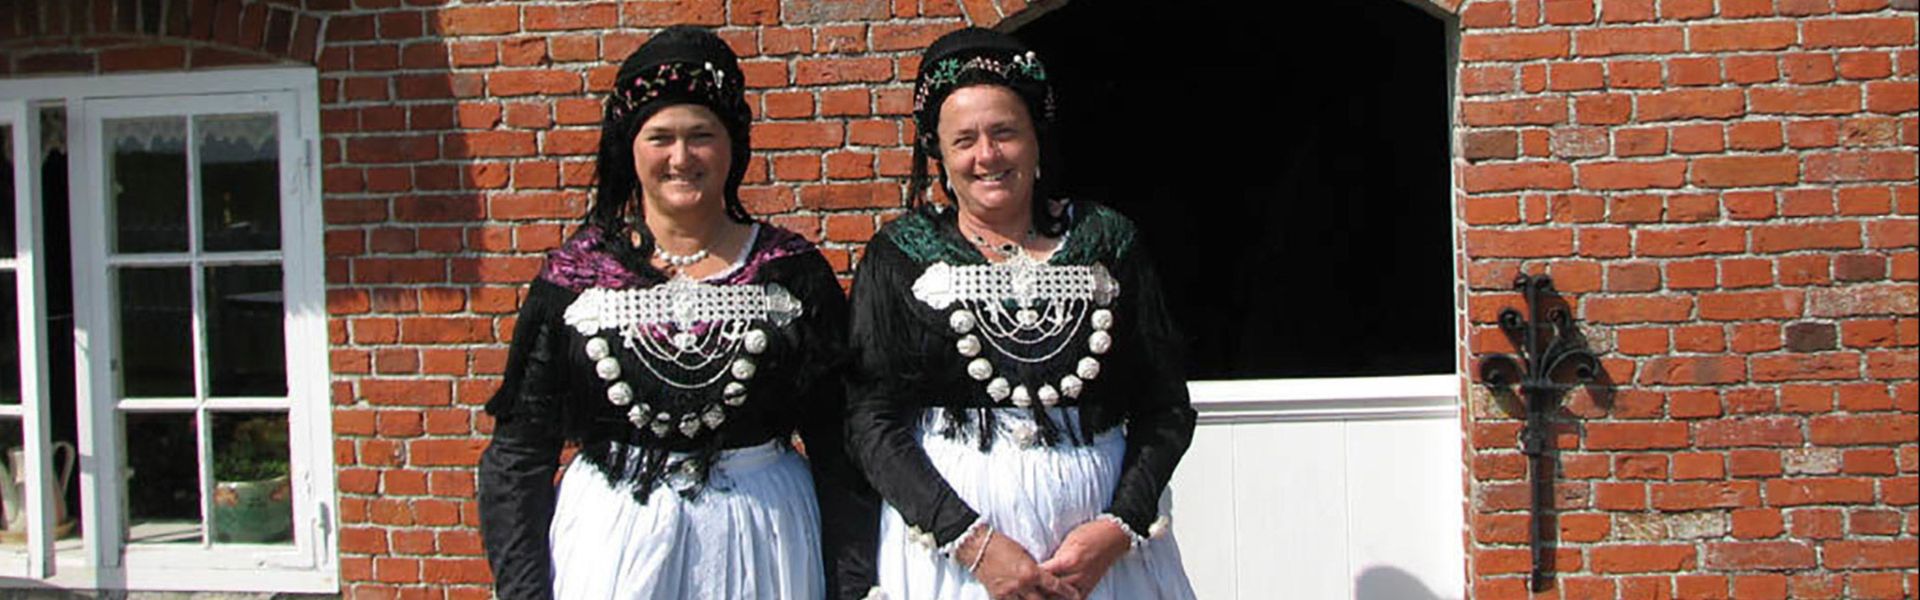 Zwei Halligfrauen in der traditionellen Tracht